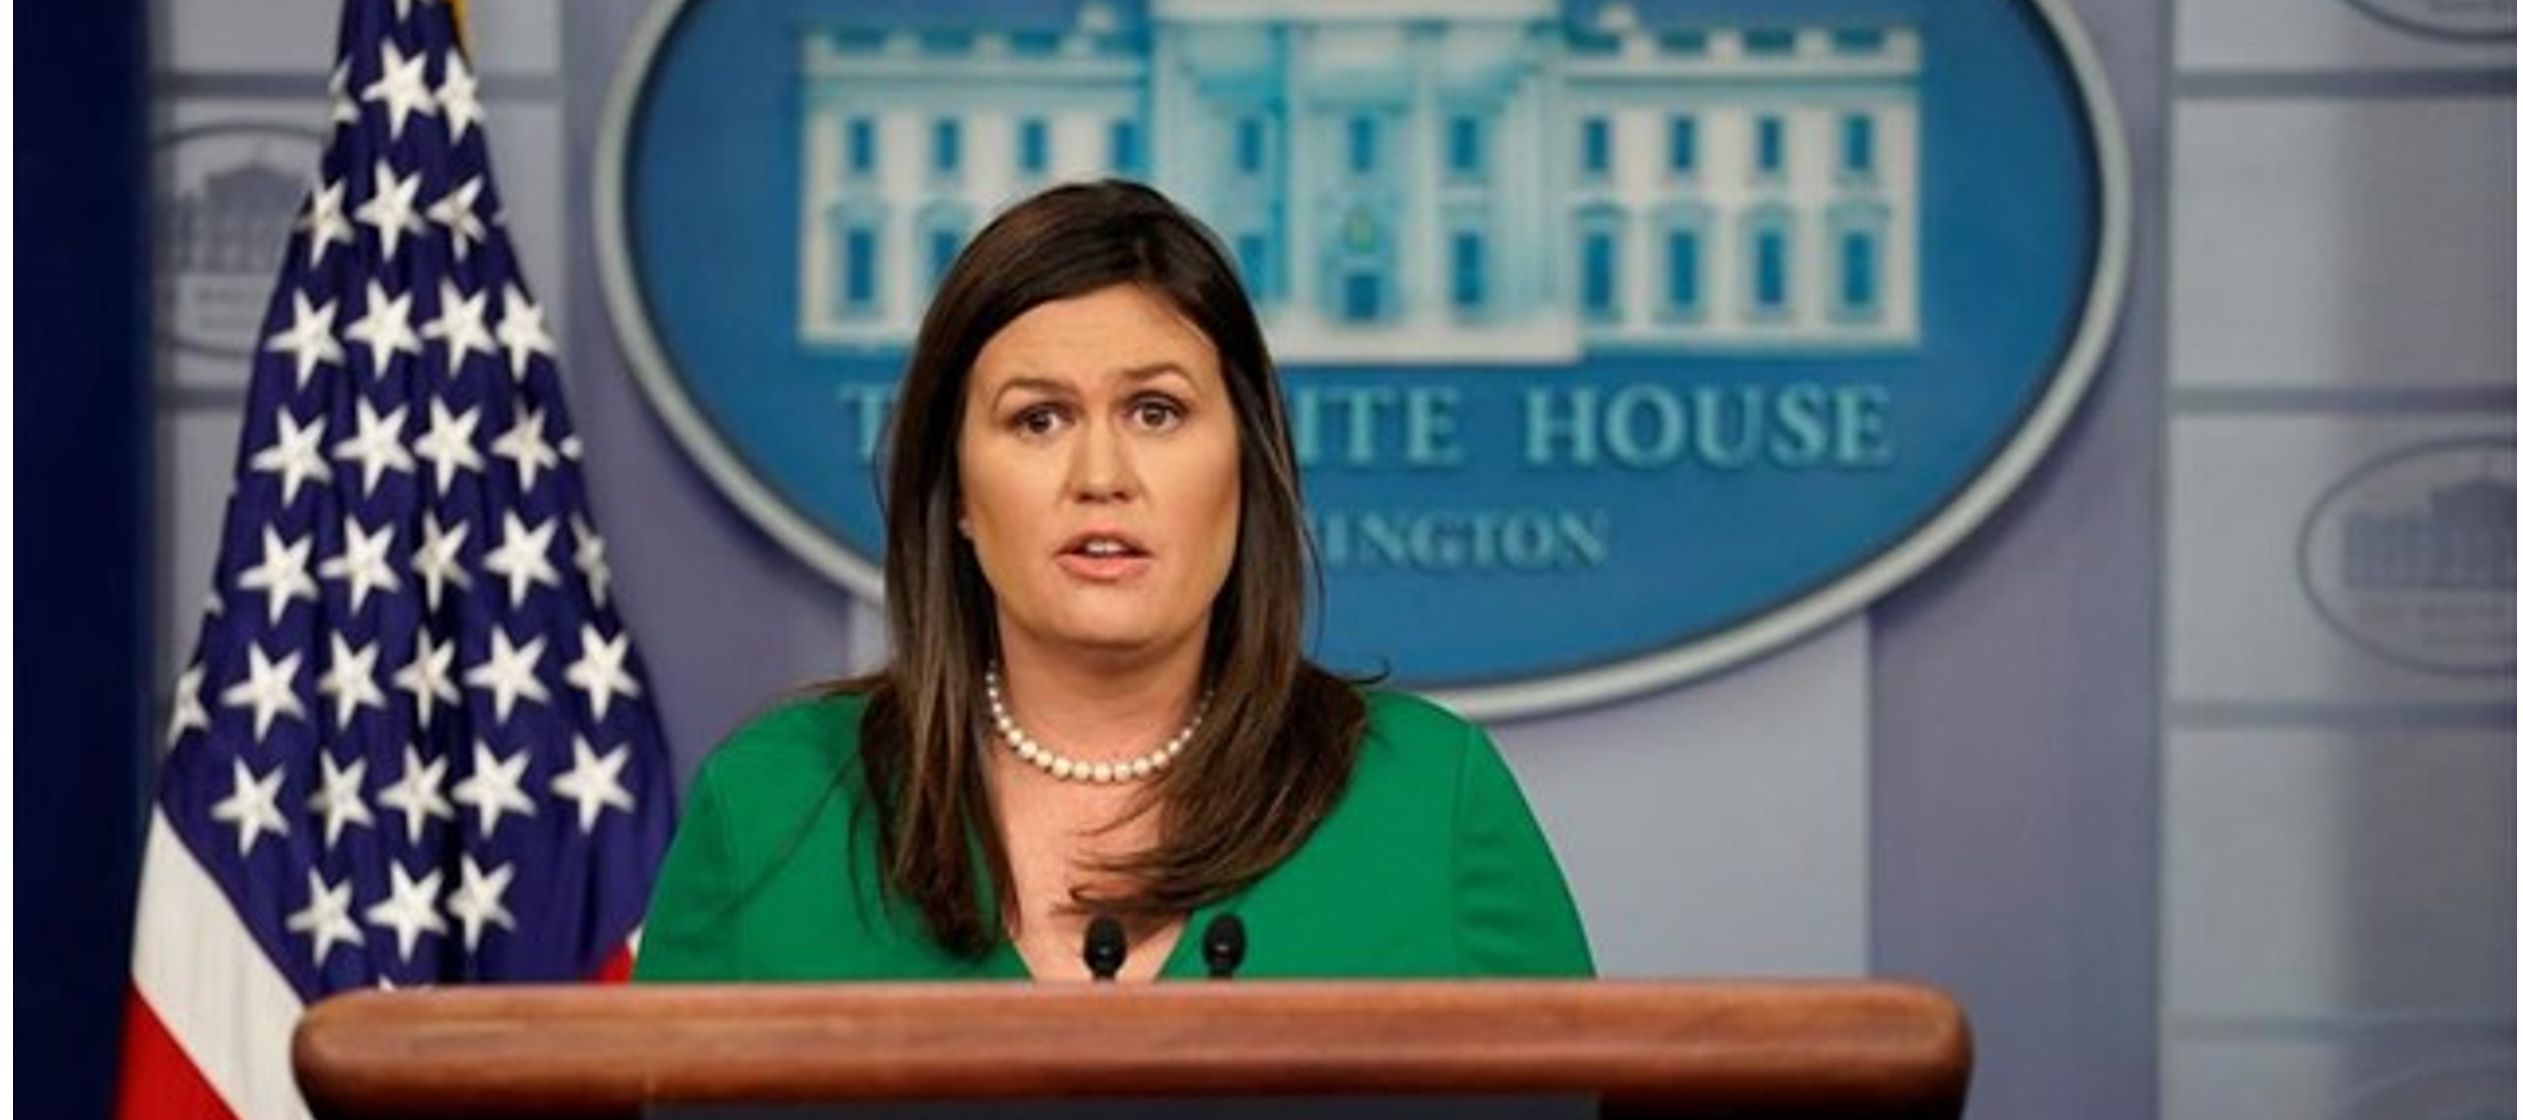 La secretaria de prensa de la Casa Blanca, Sarah Sanders, ha anunciado a bordo del Air Force One...